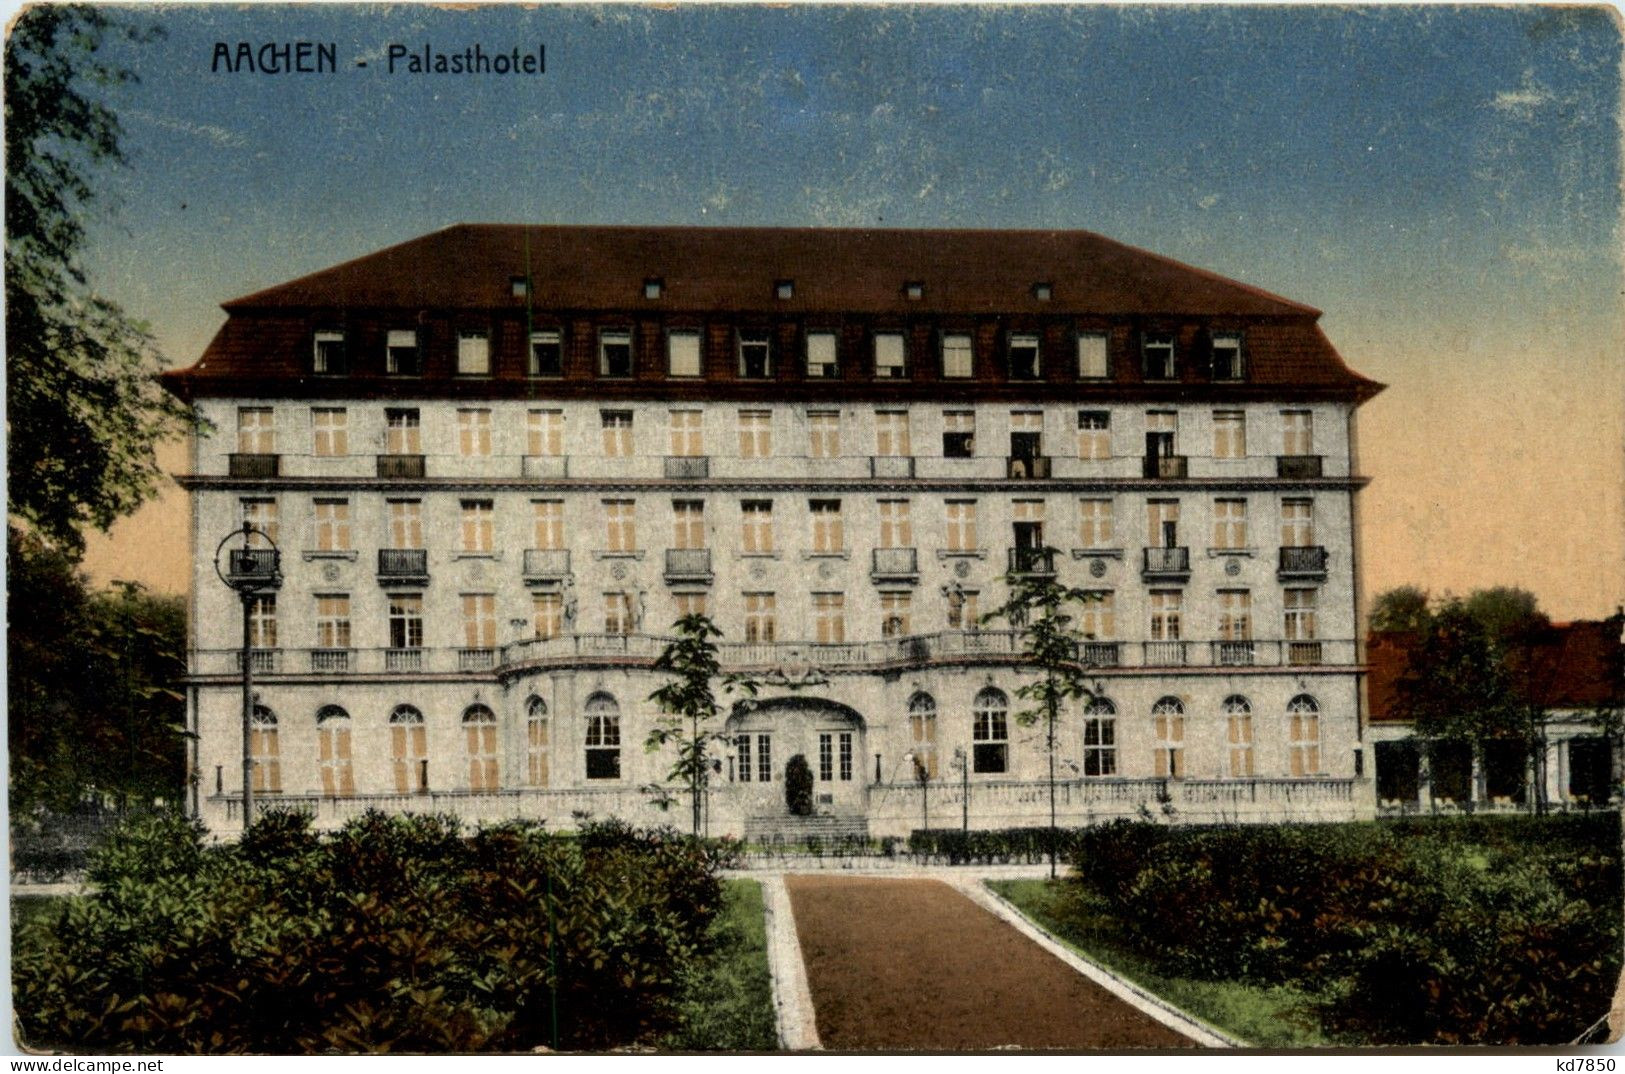 Aachen - Palasthotel - Aken